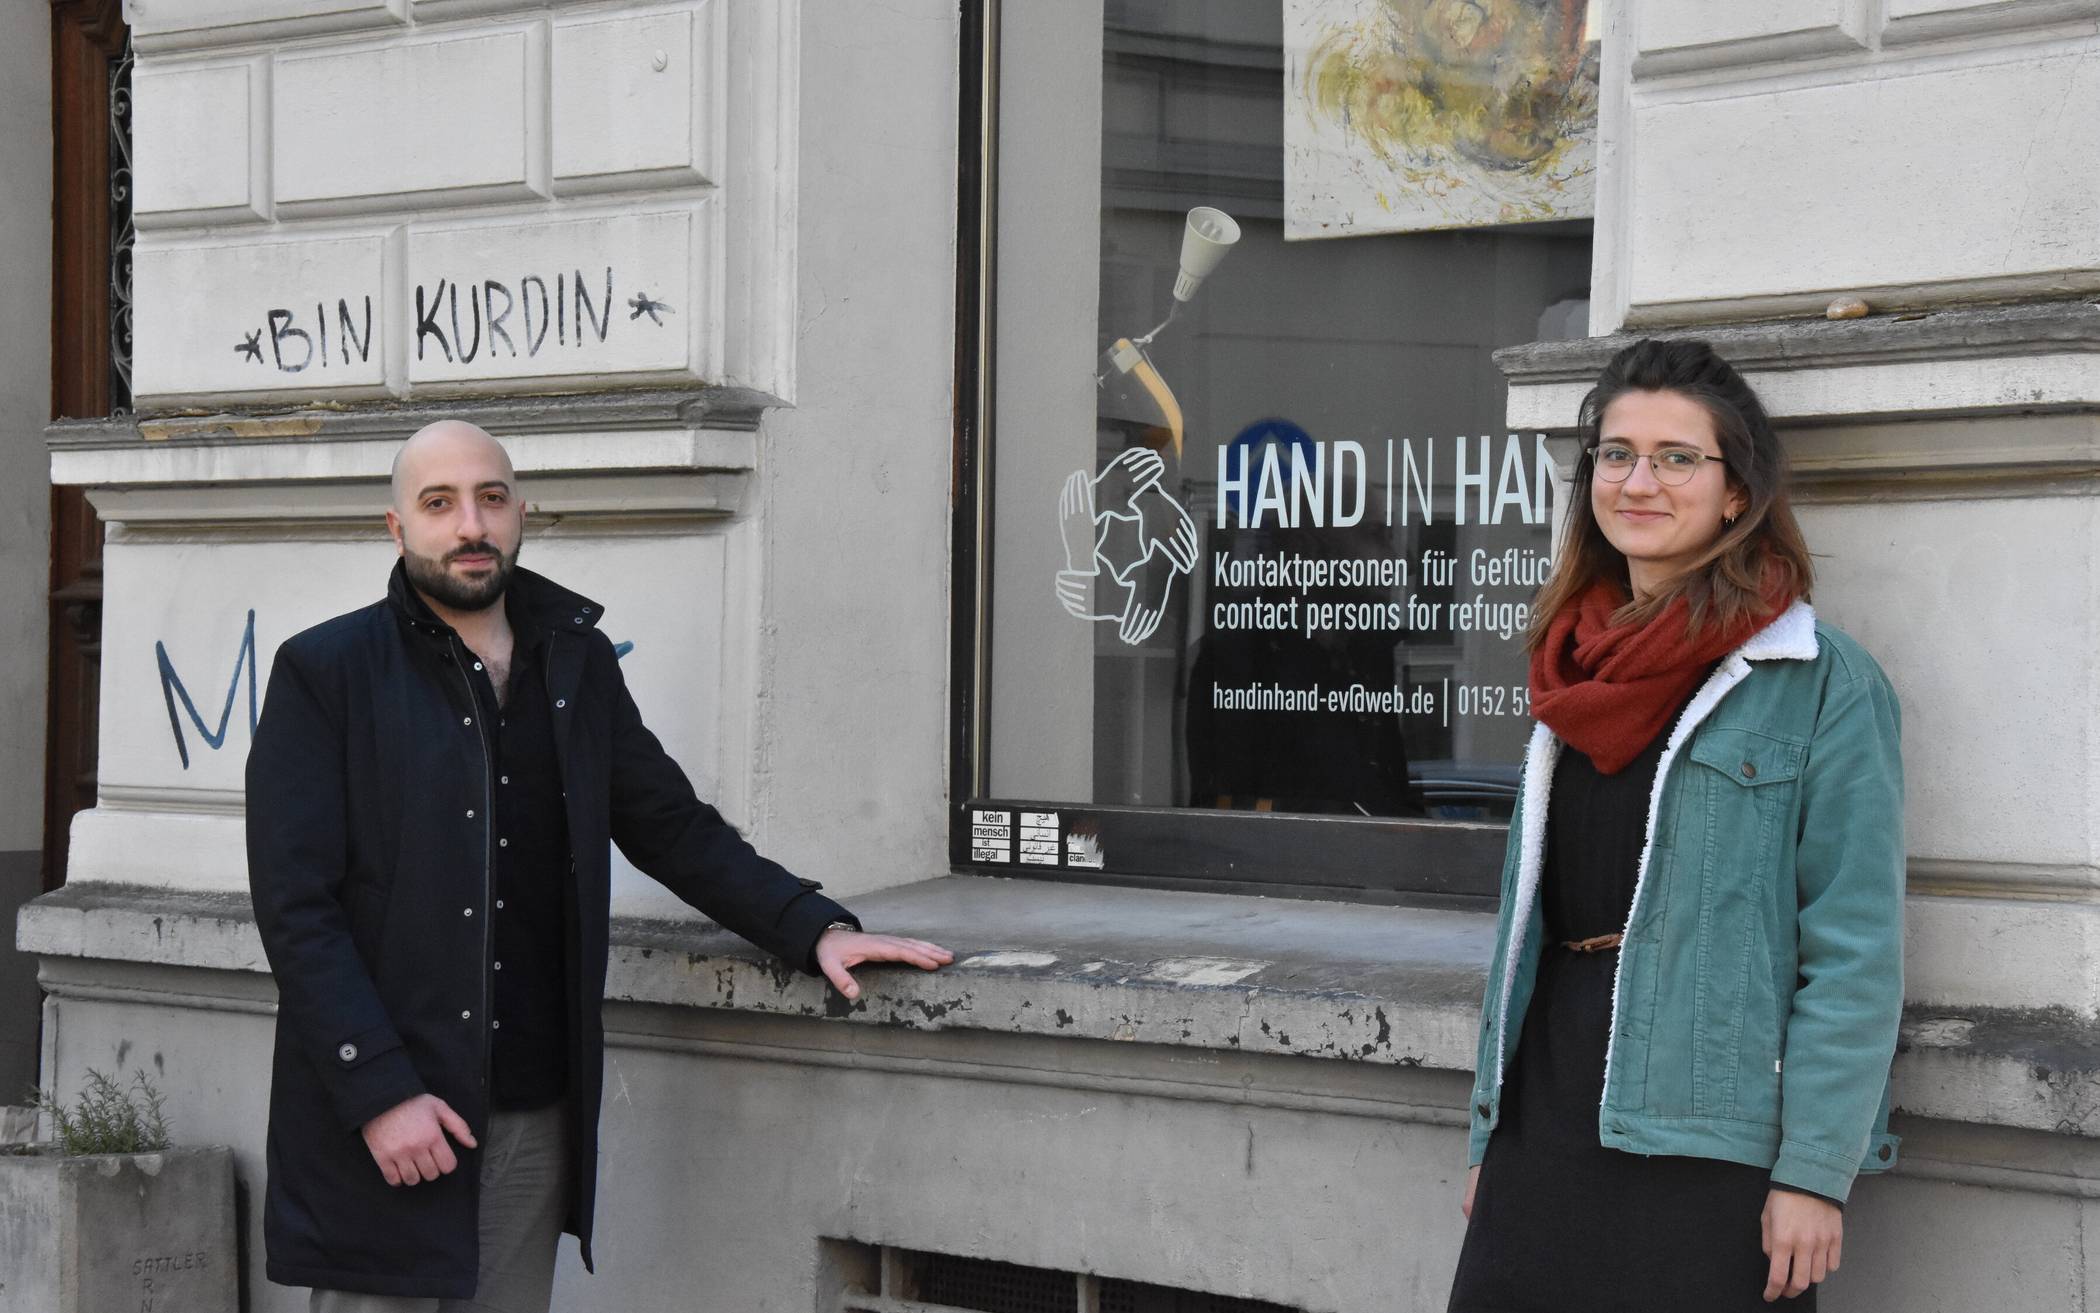  Mit  Kunst ein sichtbares Zeichen setzen und Neugierde wecken: Wael Kayyali und Franca Krupa präsentieren ihre Werke zum Start der Aktion „Fensterkunst“ des Vereins "Hand in Hand" im Mirker Viertel.      